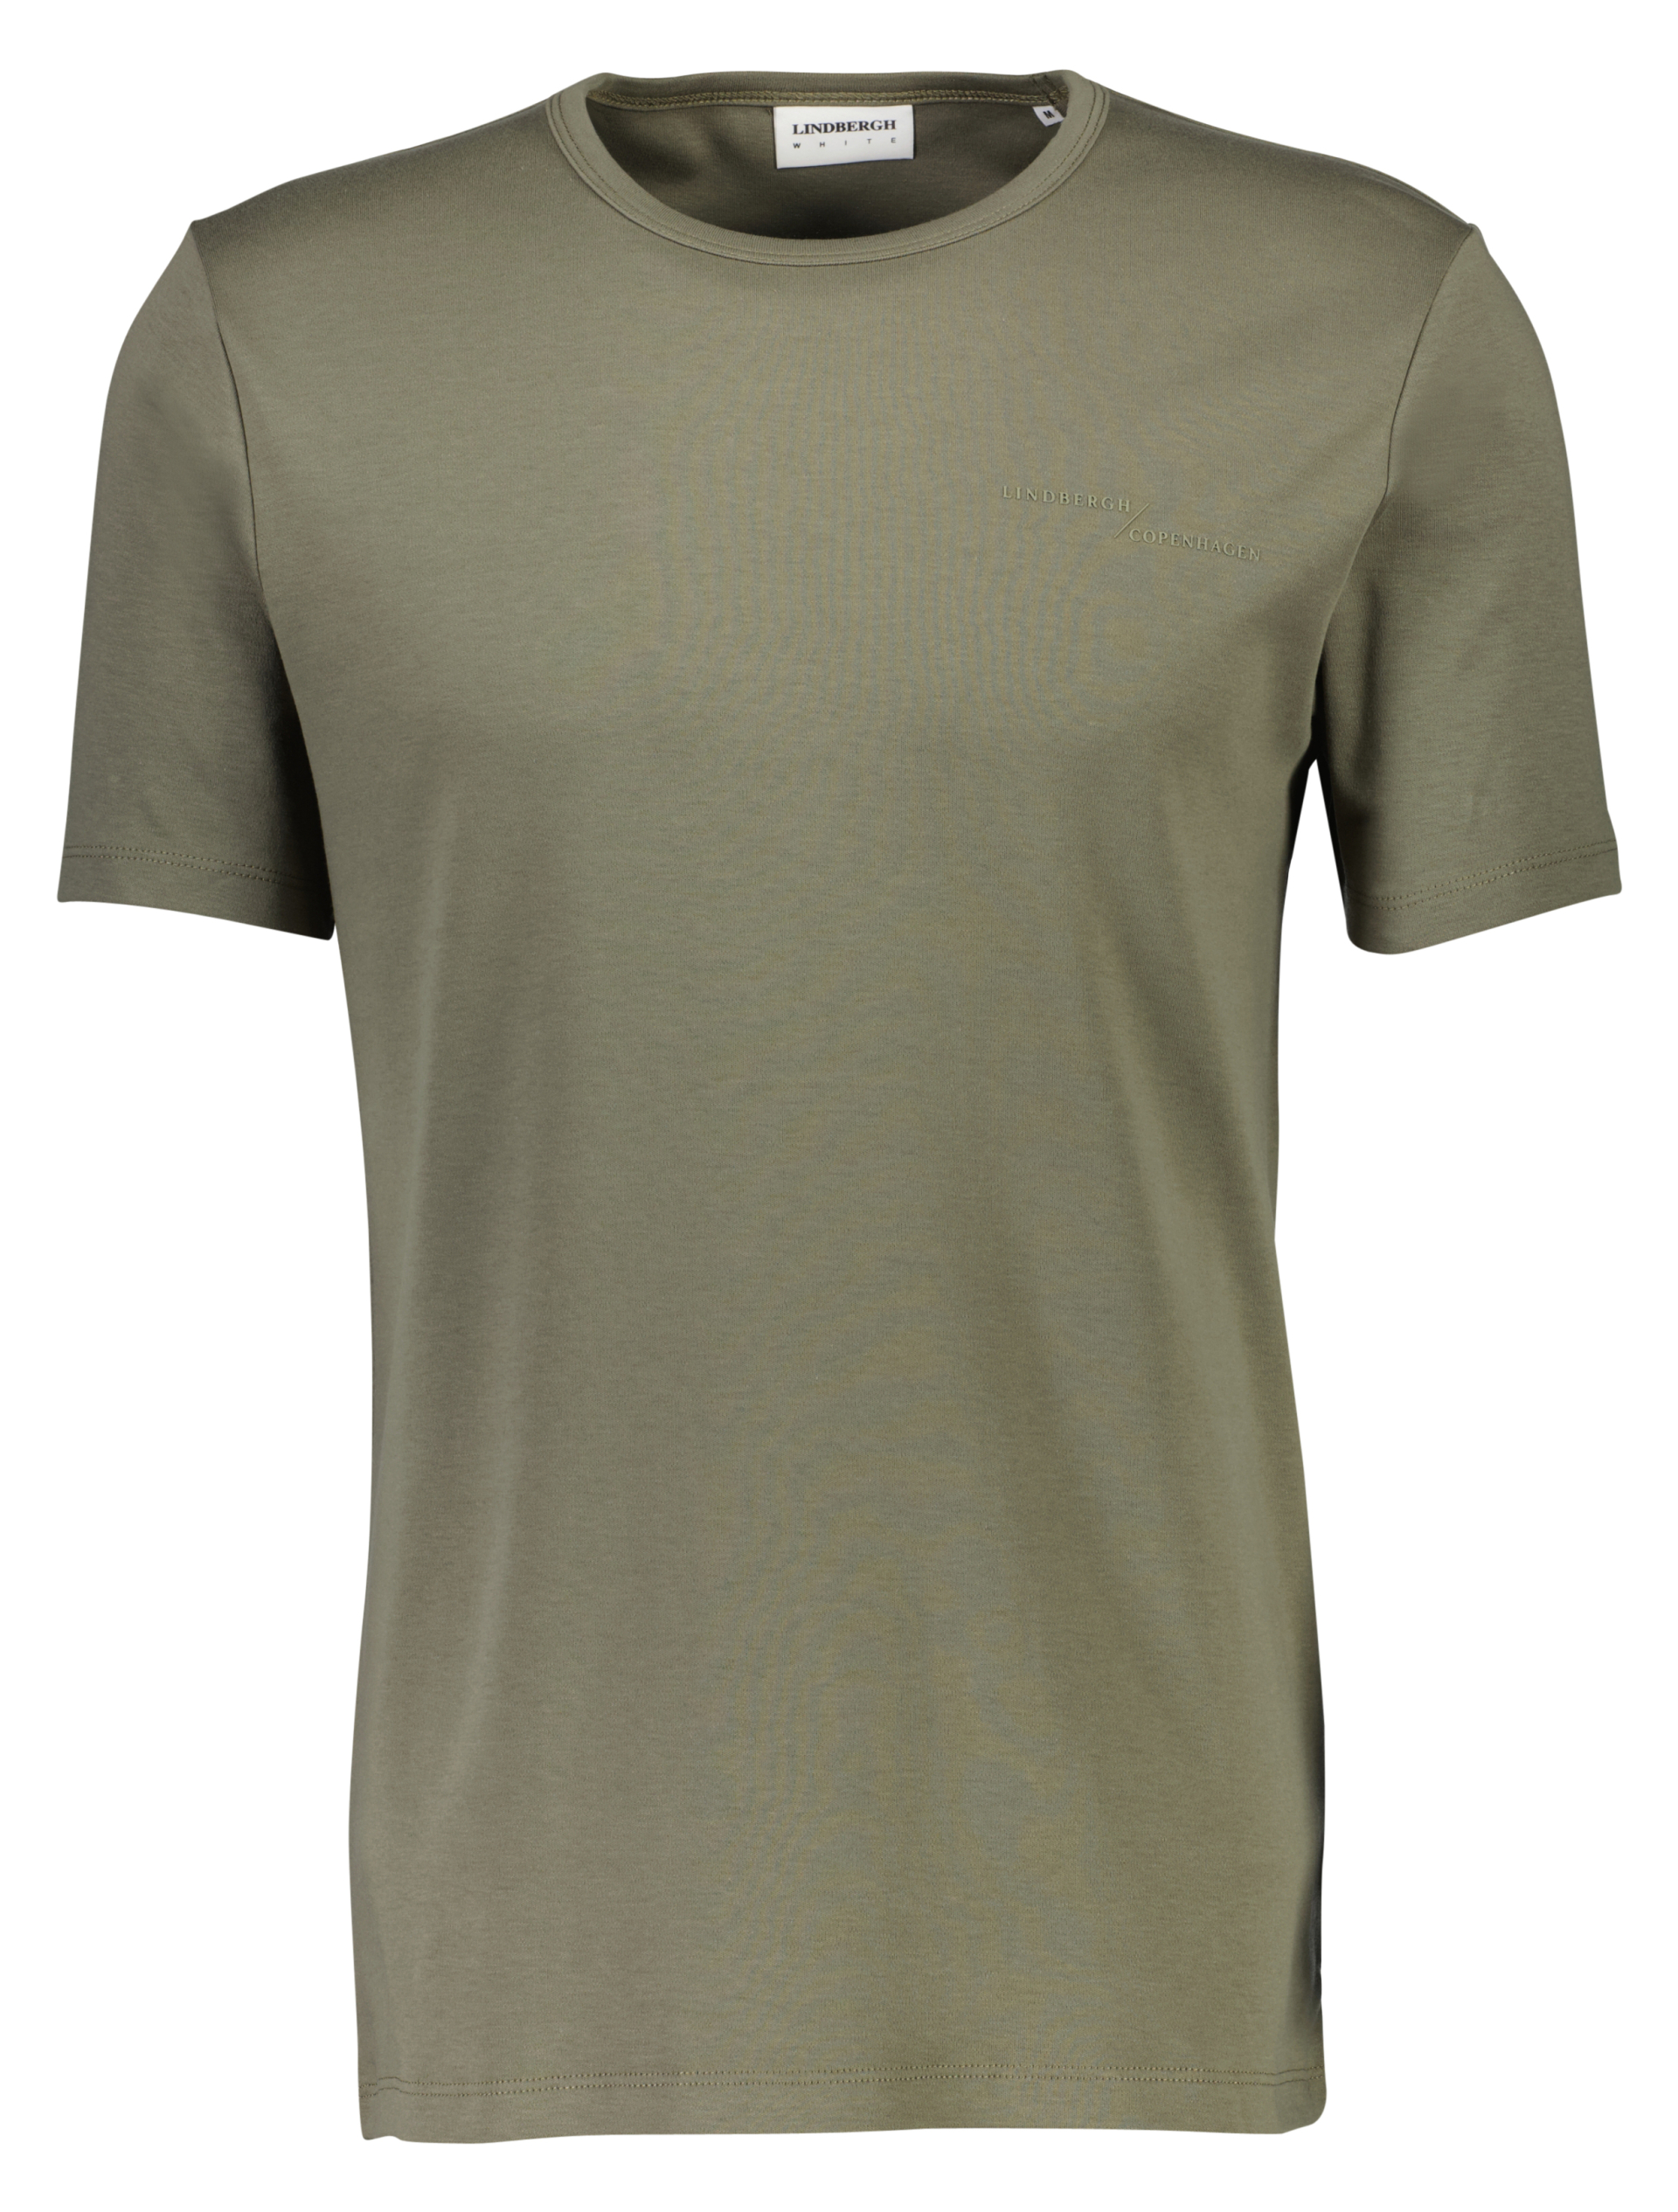 Lindbergh T-Shirt grün / army